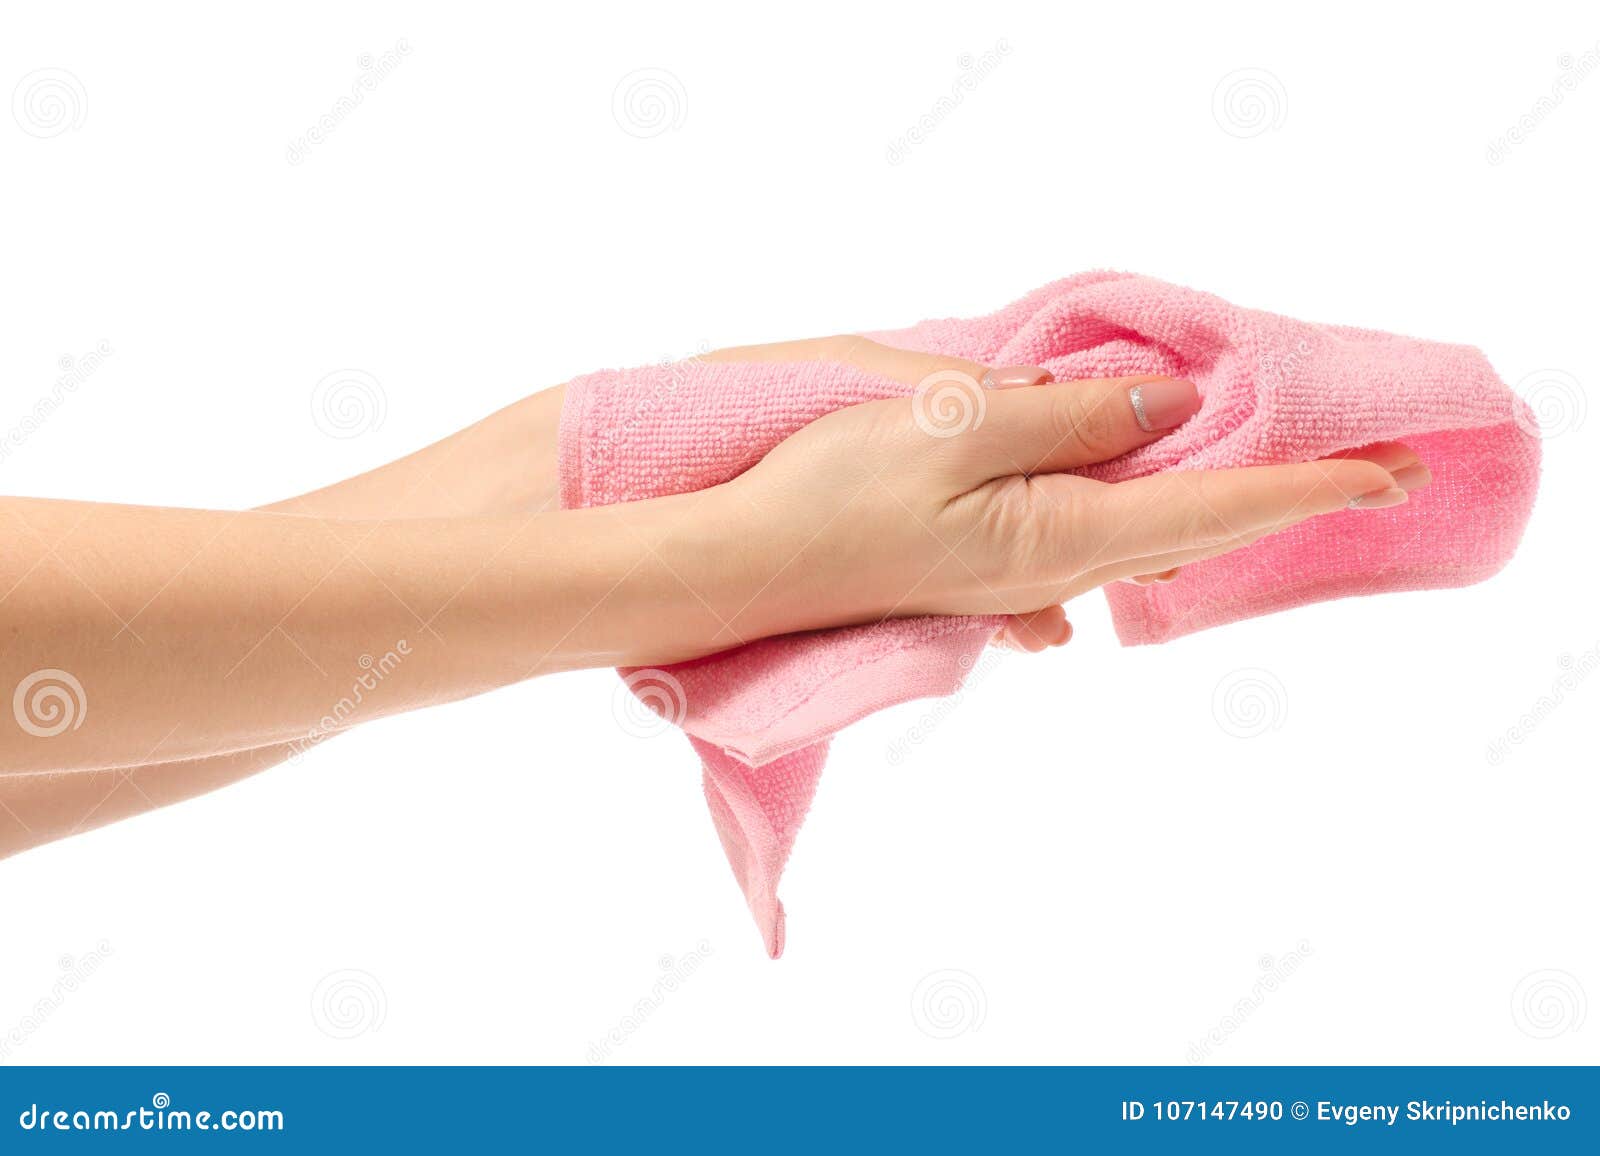 Забрал полотенце. Полотенце для рук. Вытирание рук полотенцем. Скомканное полотенце в руках. Полотенце на валике для вытирания рук.